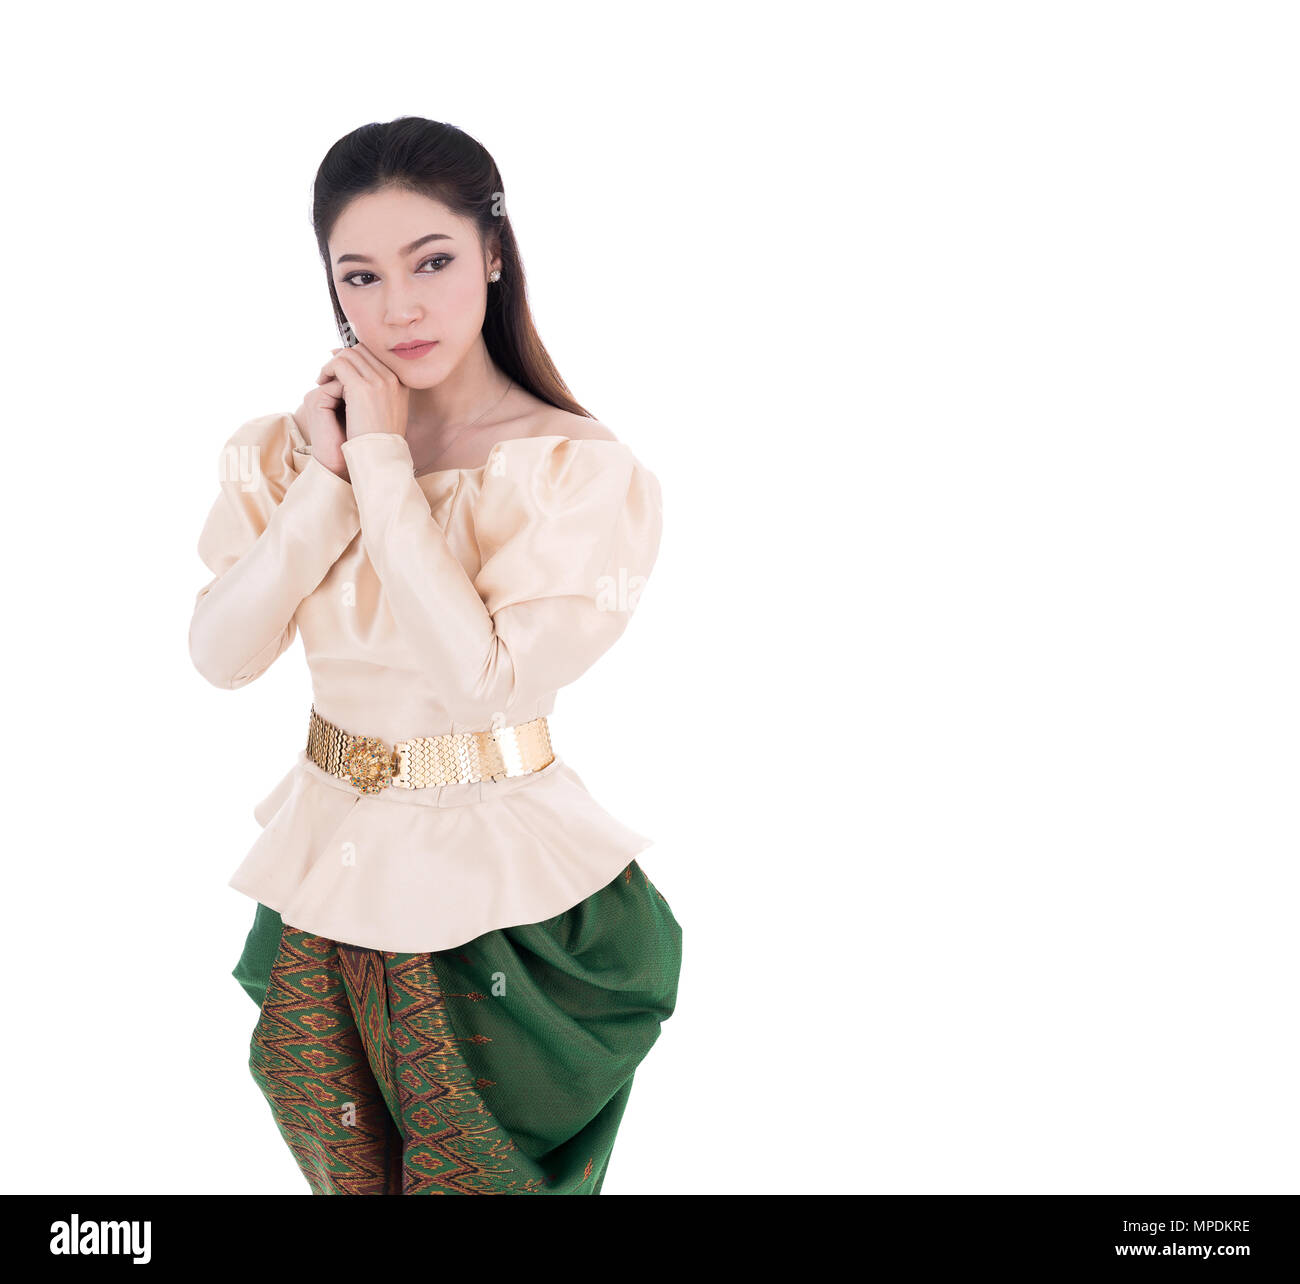 Premuto donna in Thai abito tradizionale isolato su sfondo bianco Foto Stock